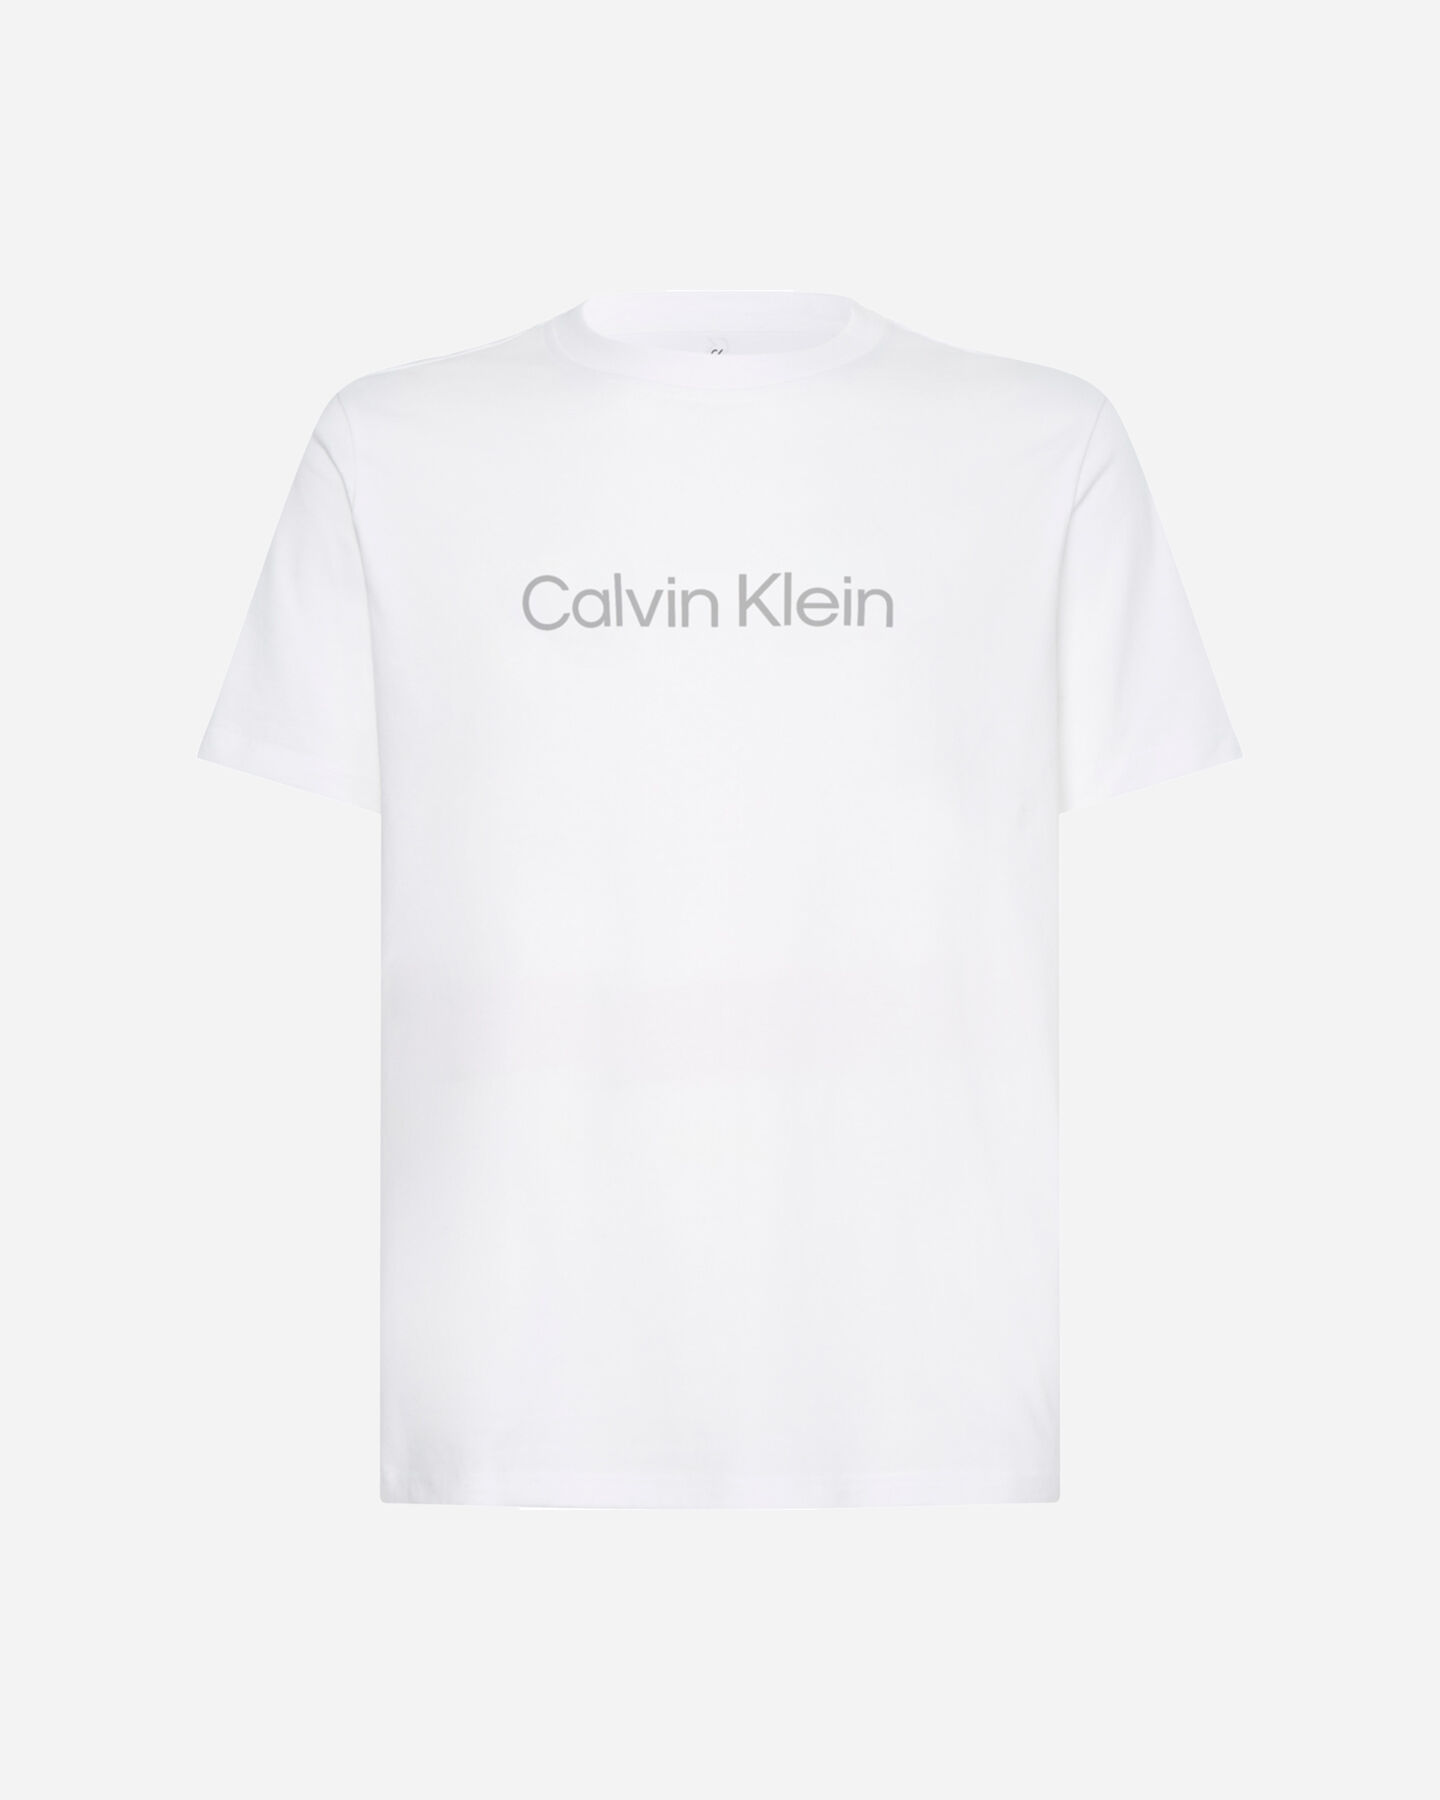  T-Shirt CALVIN KLEIN SPORT LOGO  M S4102086|YAF|S scatto 0